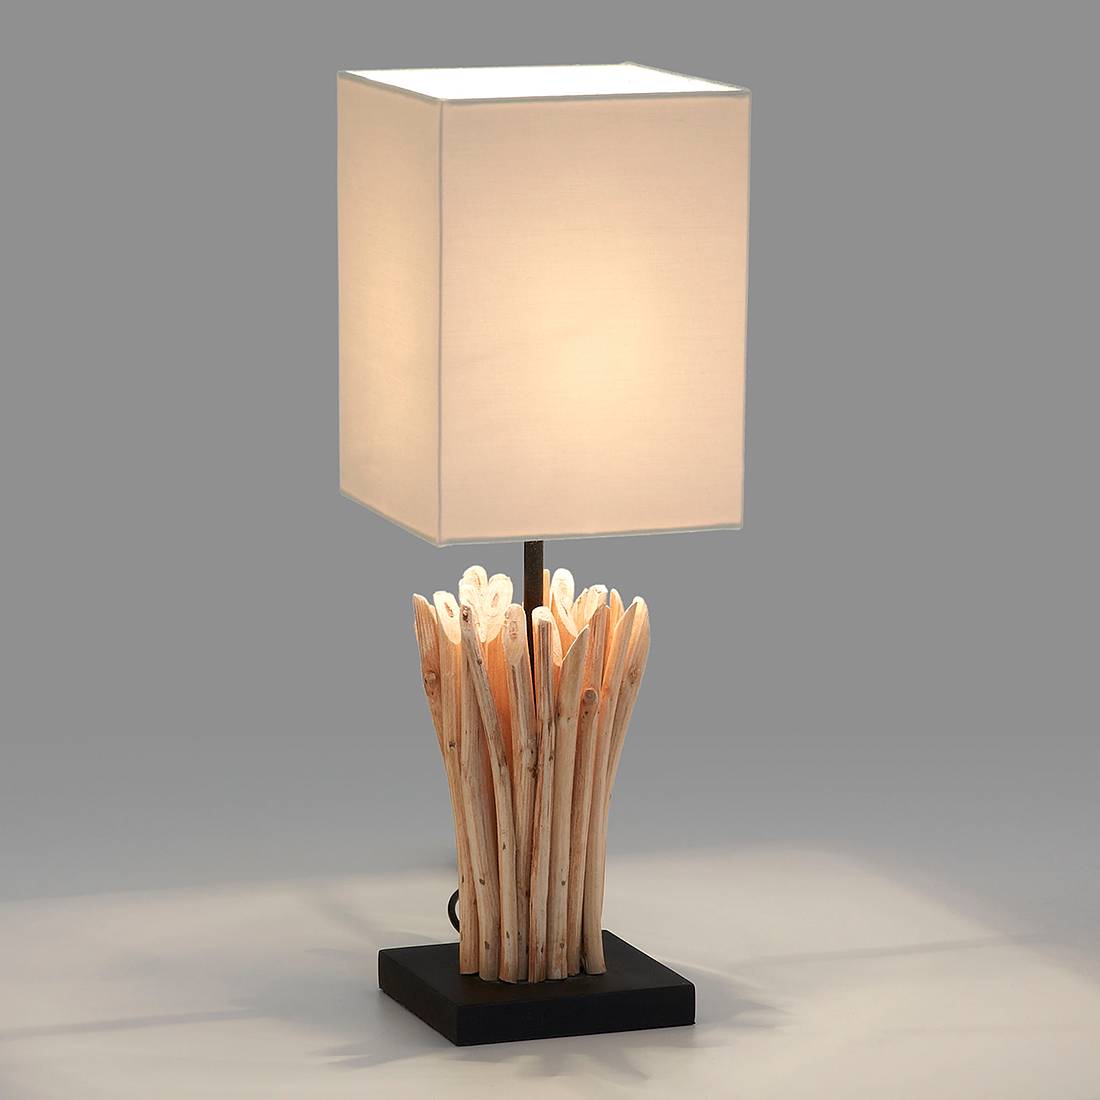 Image of Lampe Boop by Julià 000000001000054587